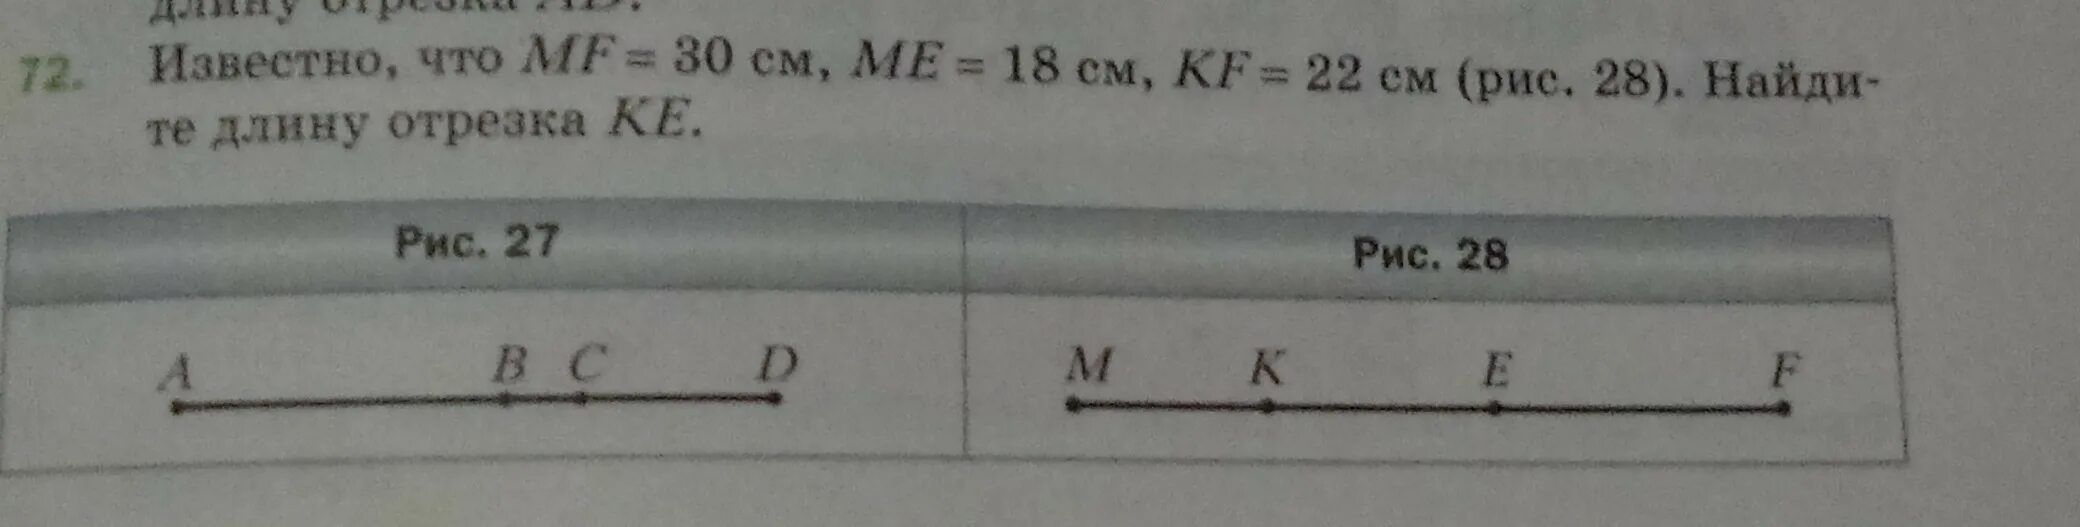 10 известно что чему равен. Известно что MF. Известно что mf30 см me 18 см KF 22 см Найдите длину отрезка ke. Известно что MF 30 см. Известно что MF 30 см me 18 см KF 22 см Найдите длину отрезка k e.